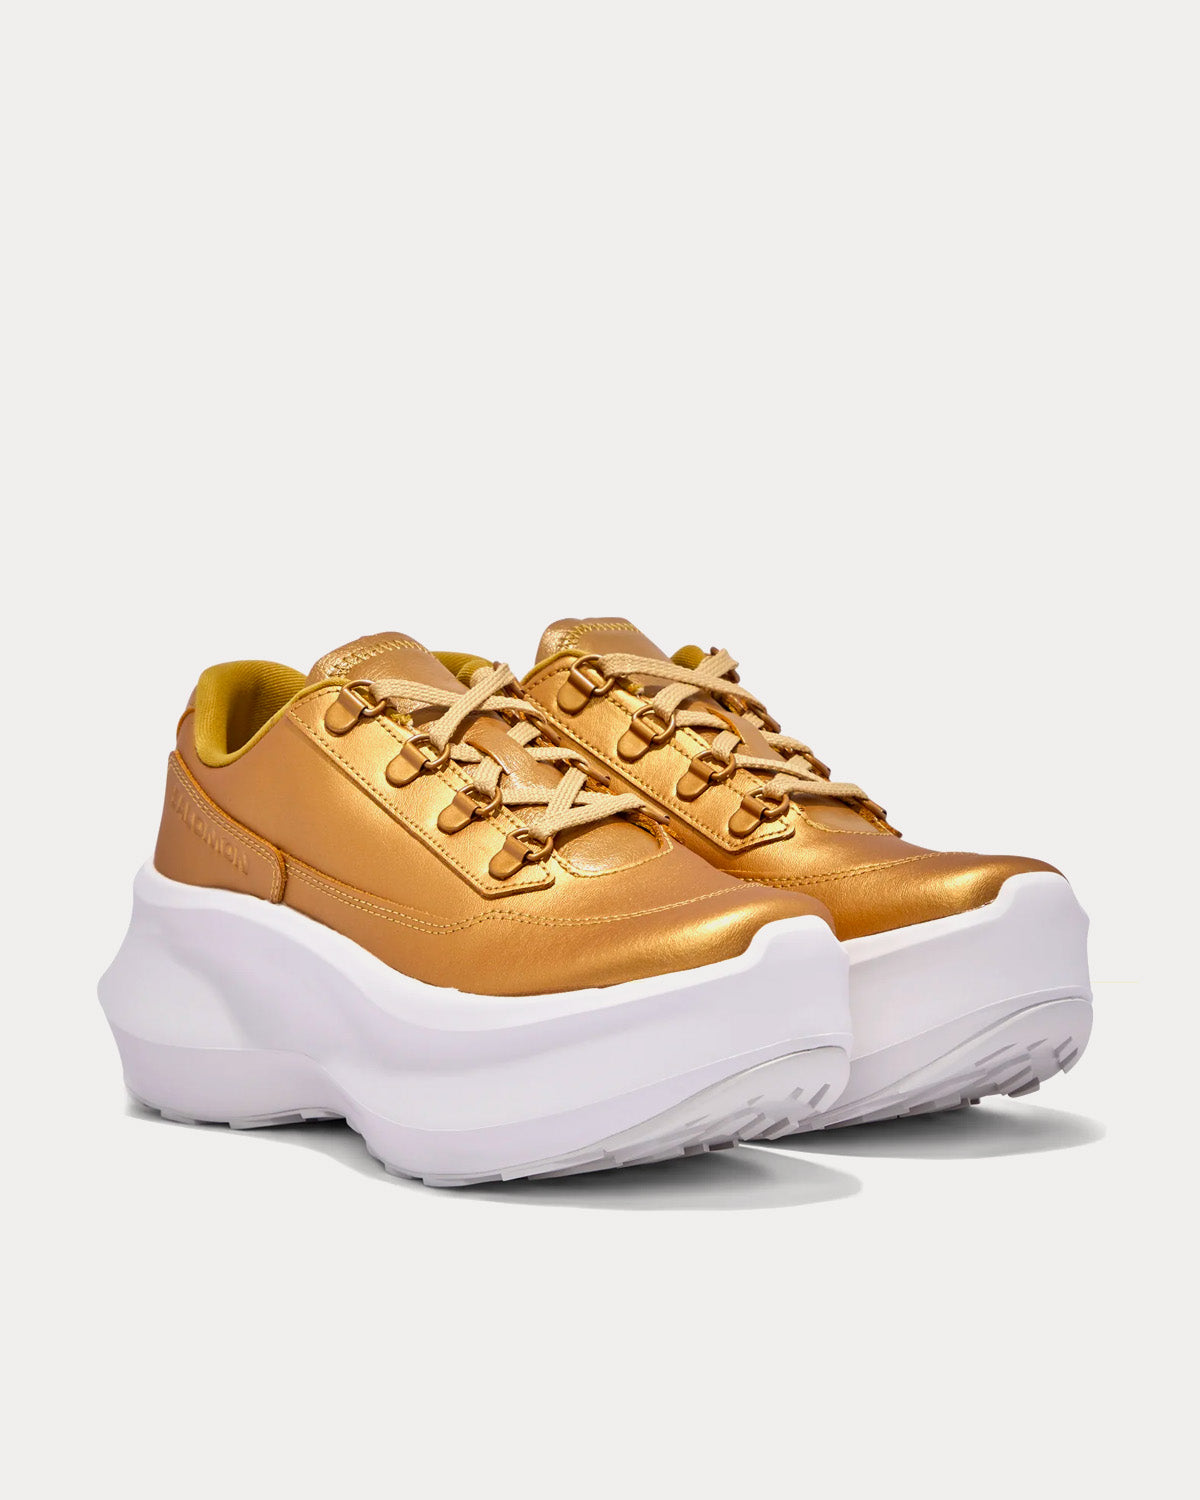 Salomon x Comme des Garçons - SR811 Platform Leather Gold Low Top Sneakers